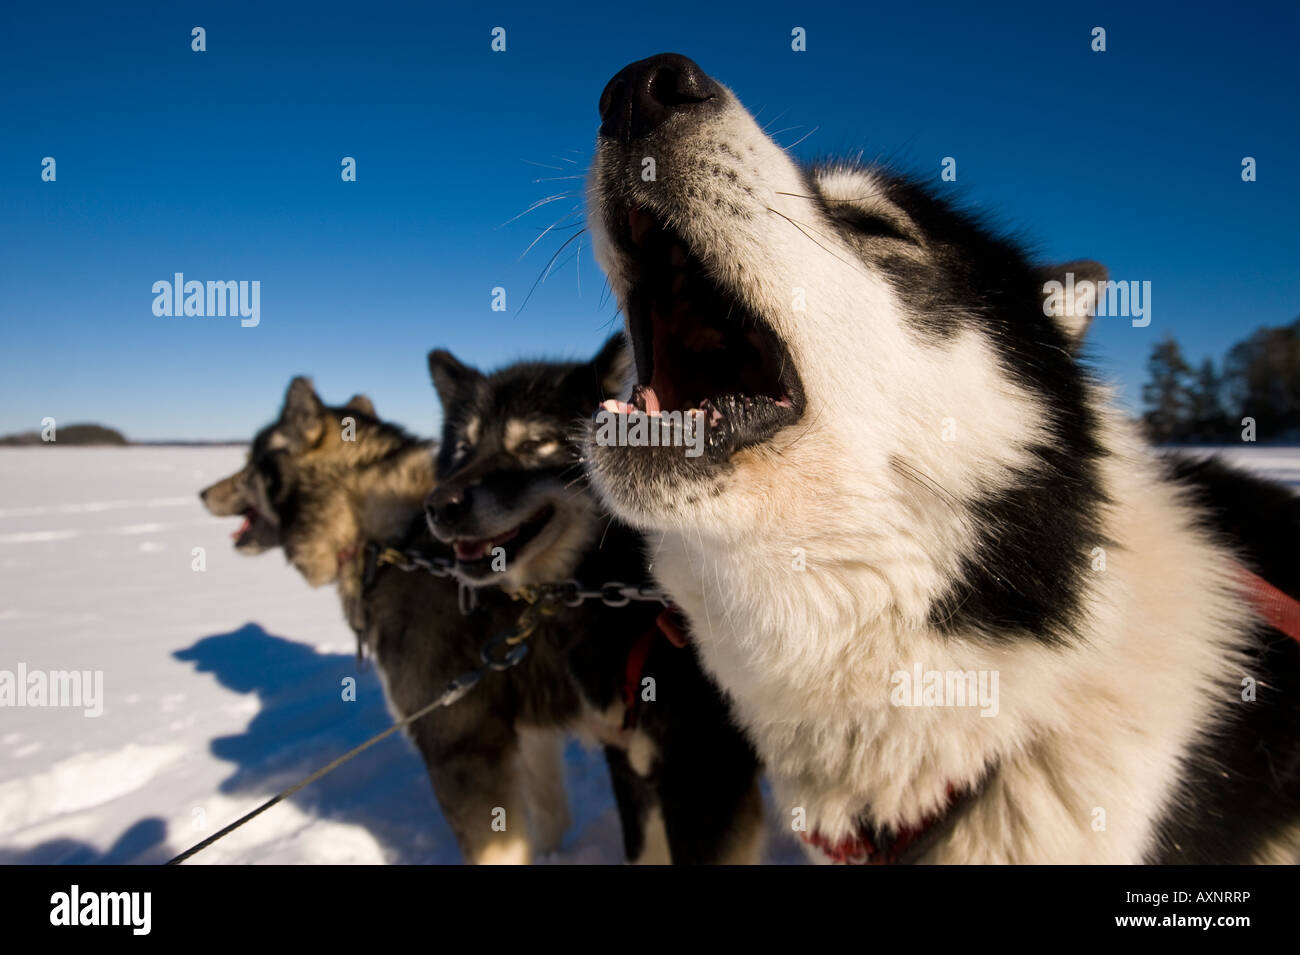 Un chien inuit canadien LAISSE ÉCHAPPER UN HURLEMENT DANS L'excitation d'TIRER LE TRAÎNEAU À CHIENS WINTERGREEN LODGE Banque D'Images